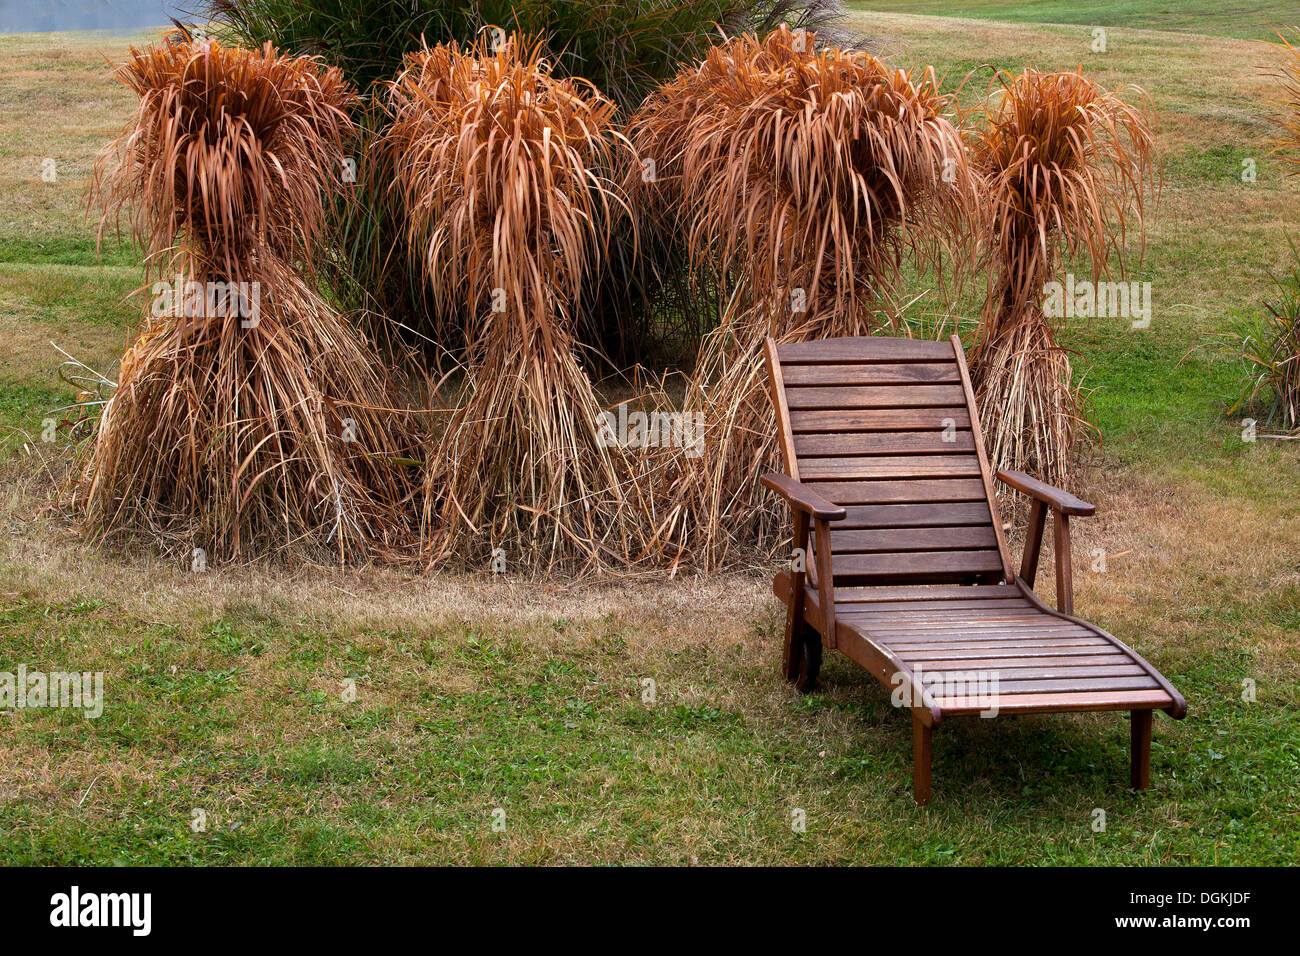 Otoño jardín banco jardín muebles de madera Miscanthus hierba listo para el invierno Foto de stock